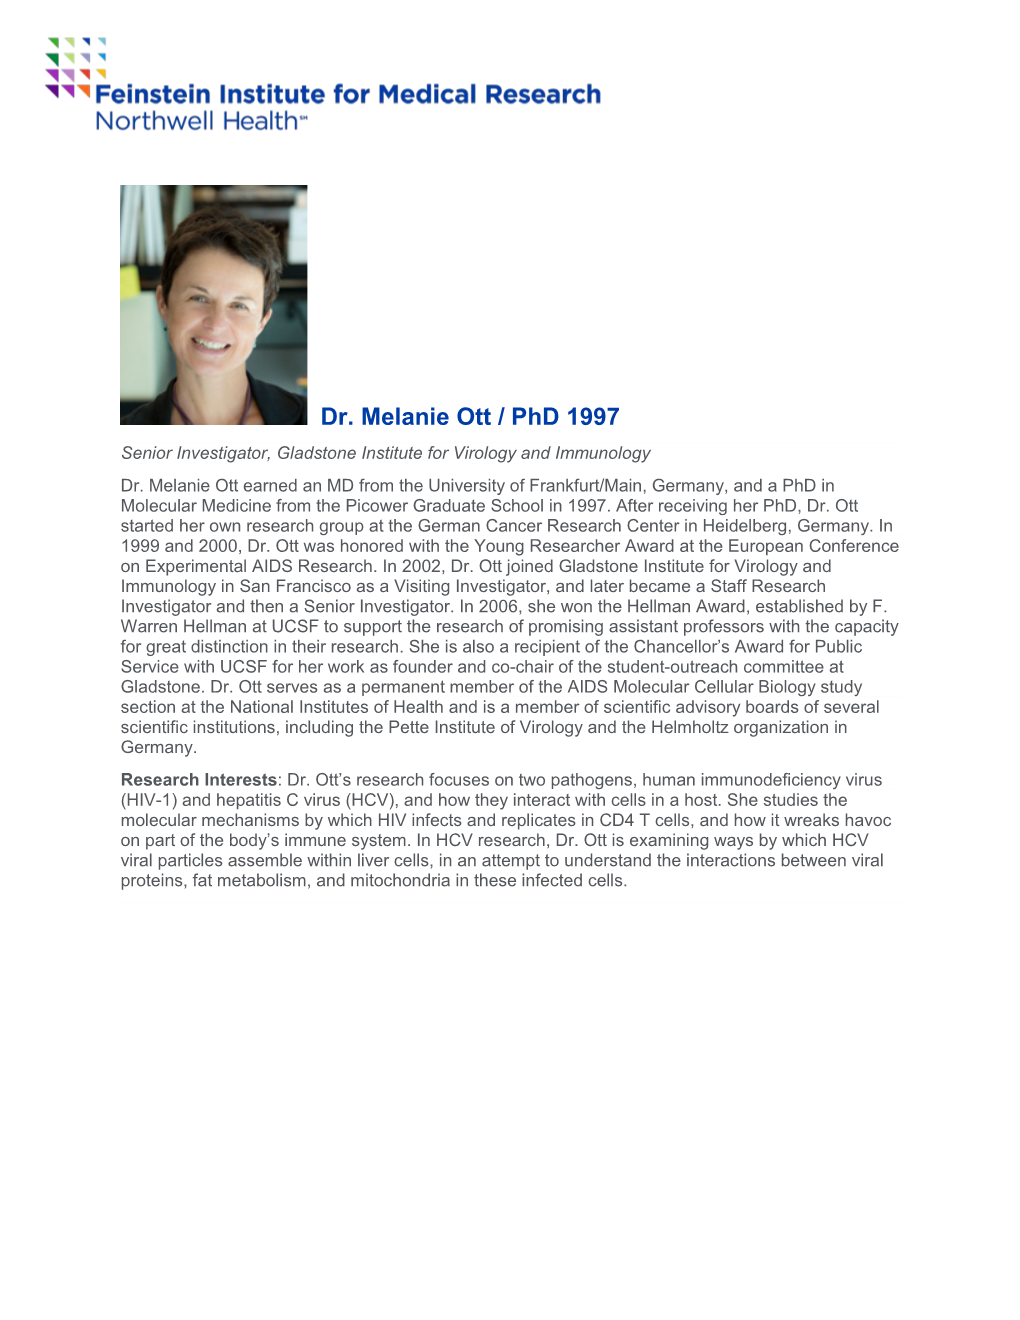 Dr. Melanie Ott / Phd 1997 Senior Investigator, Gladstone Institute for Virology and Immunology Dr